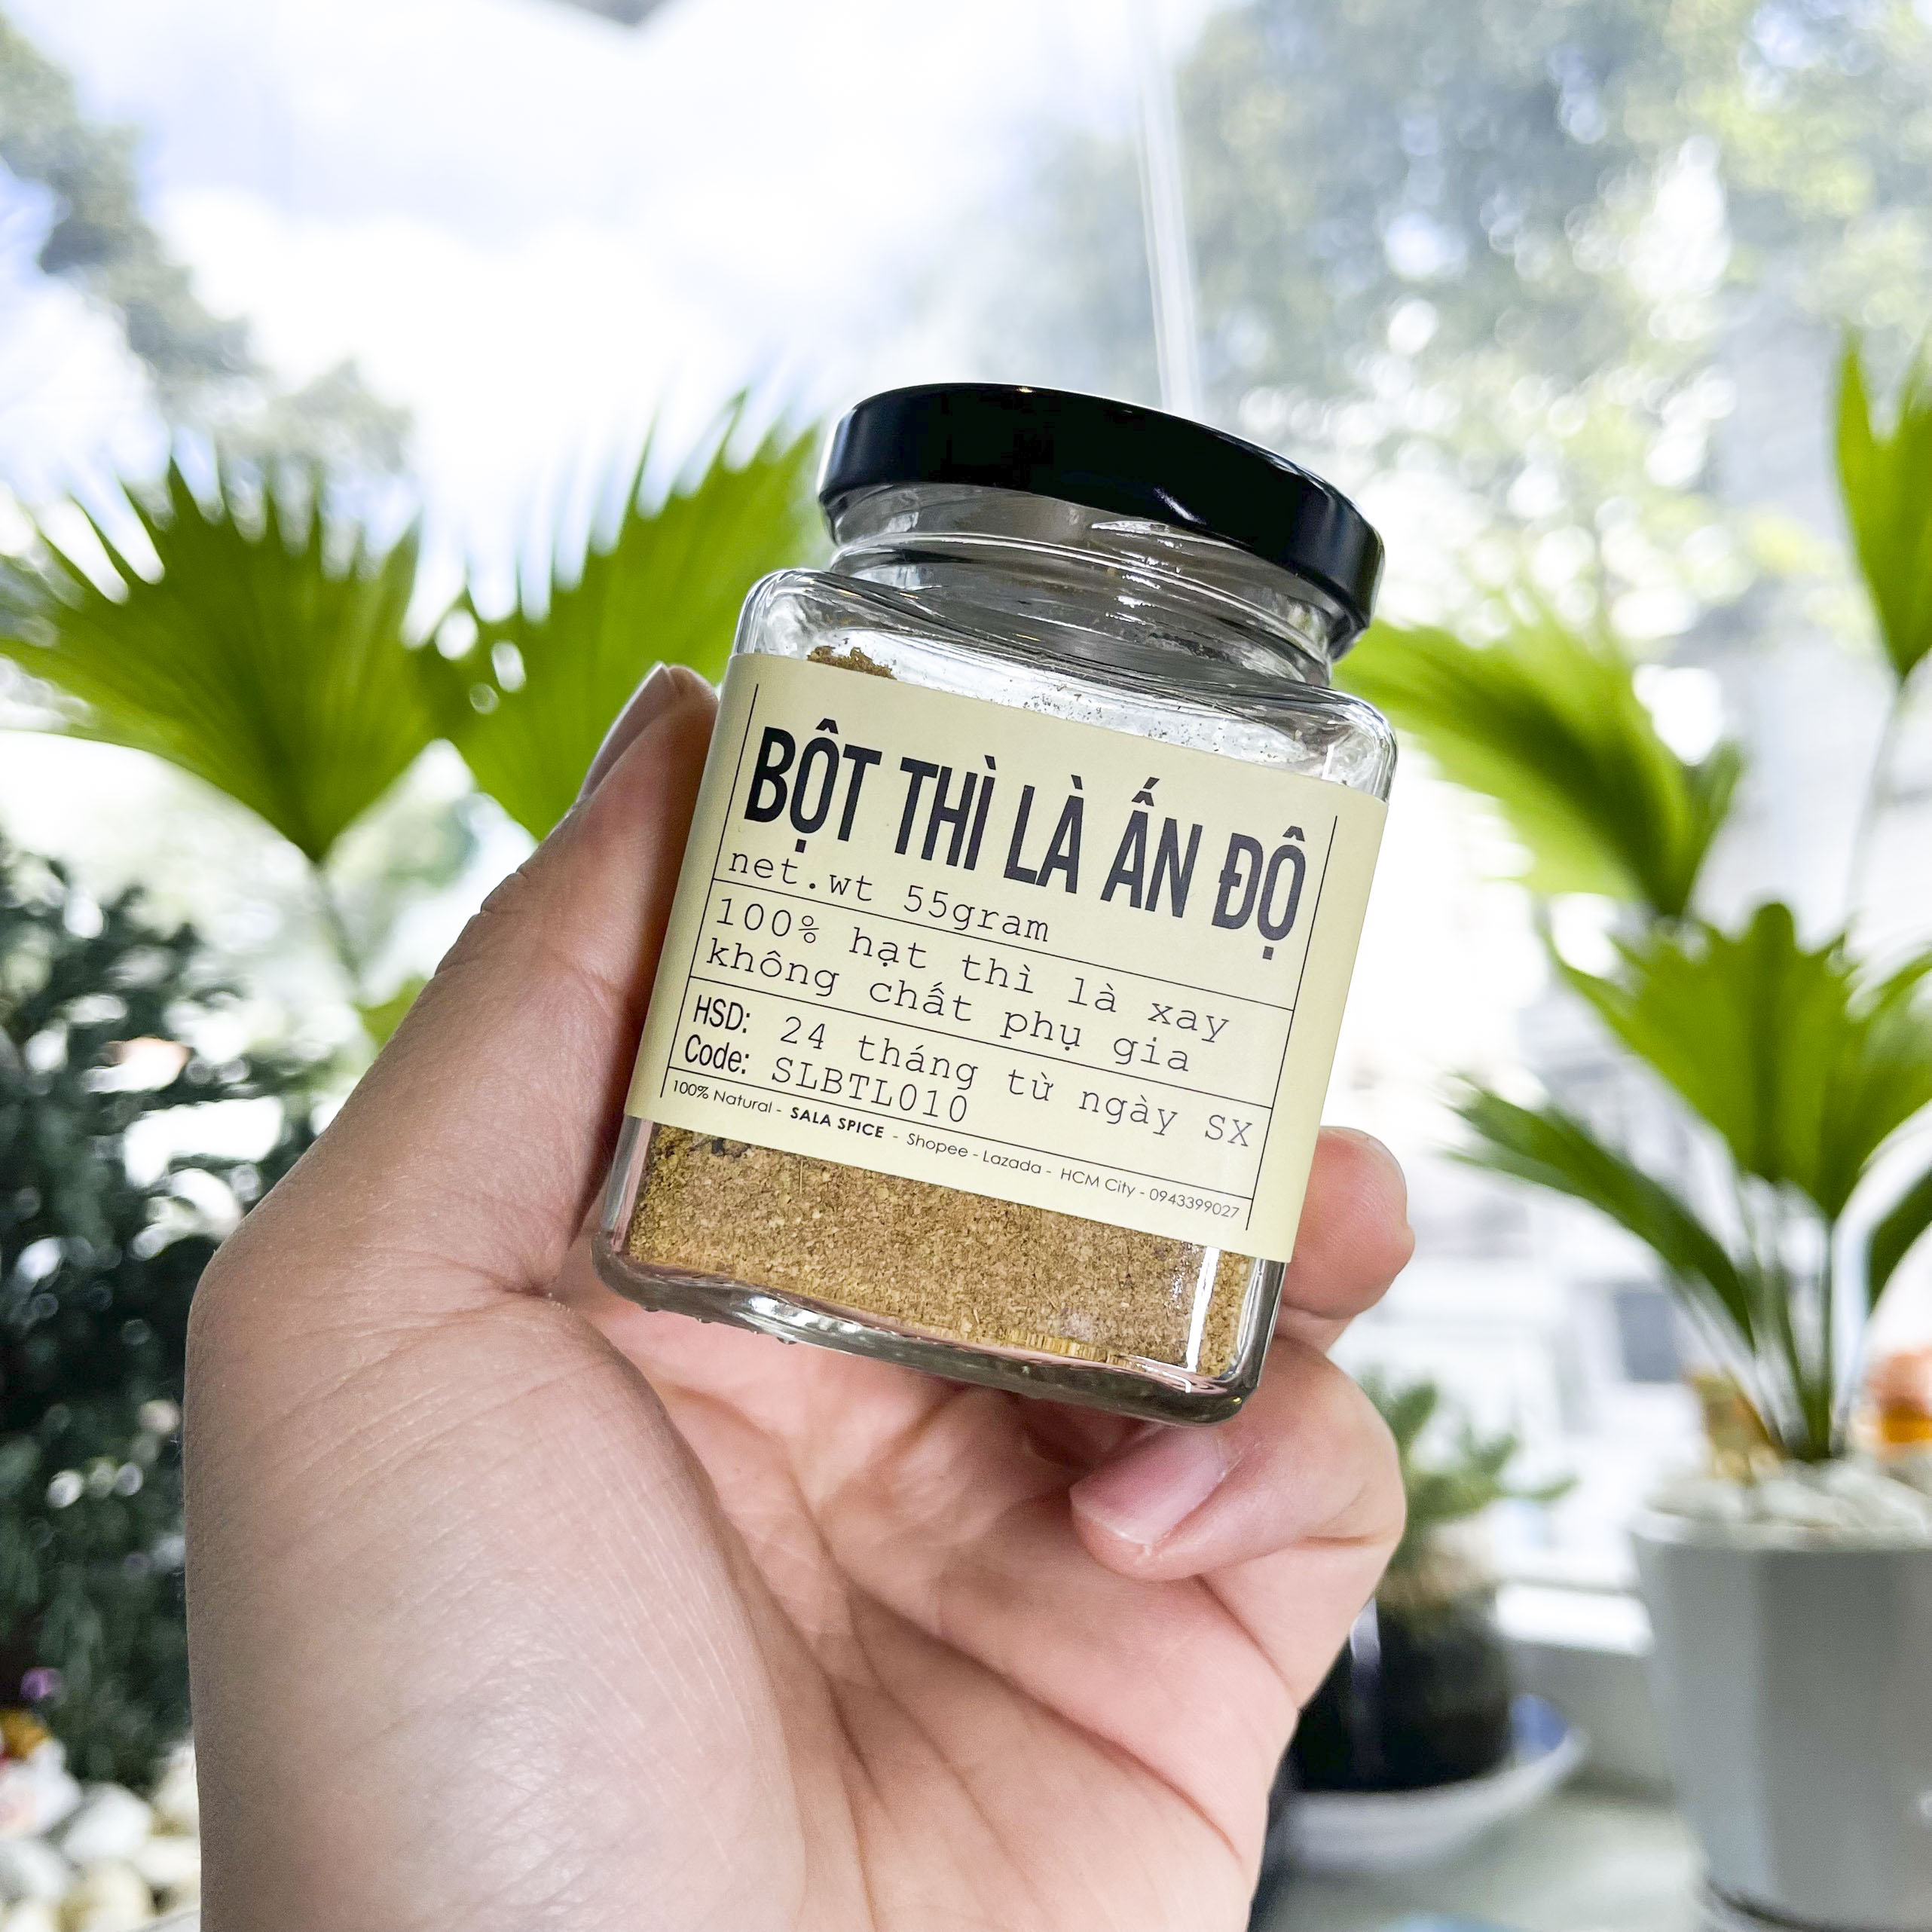 bột thì là ấn độ sala spice cumin power 100% thì là nhập khẩu ấn dùng ướp thức an tiện lợi dễ dàng , thơm ngon hấp dẫn 4